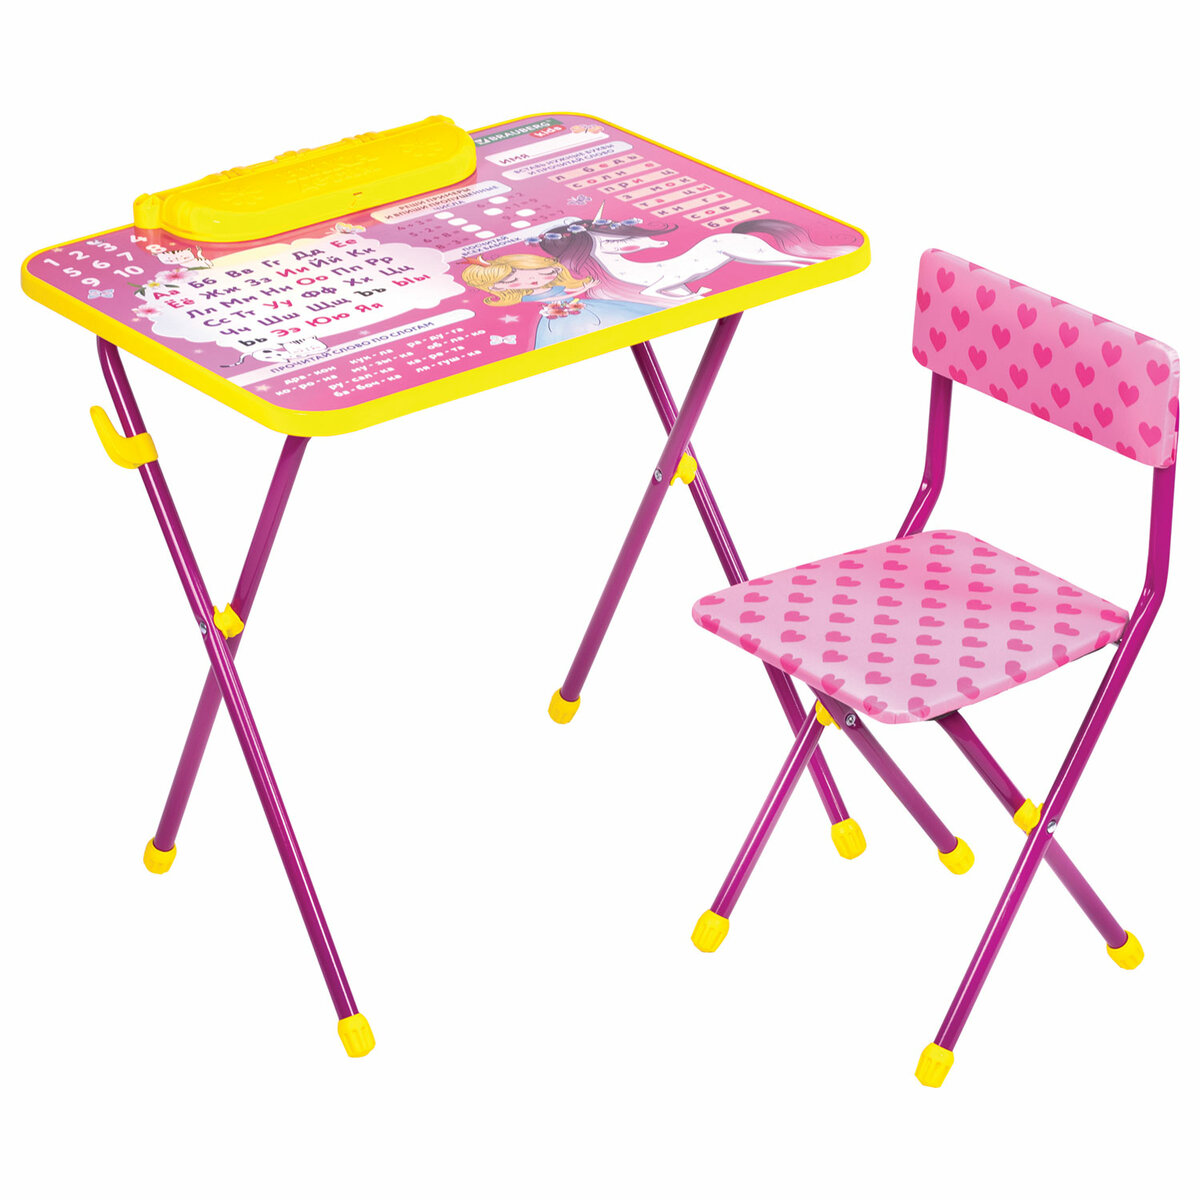 Столик и стульчик детский Brauberg игровой набор для развивающих игр для девочки розовый Принцесса - фото 10